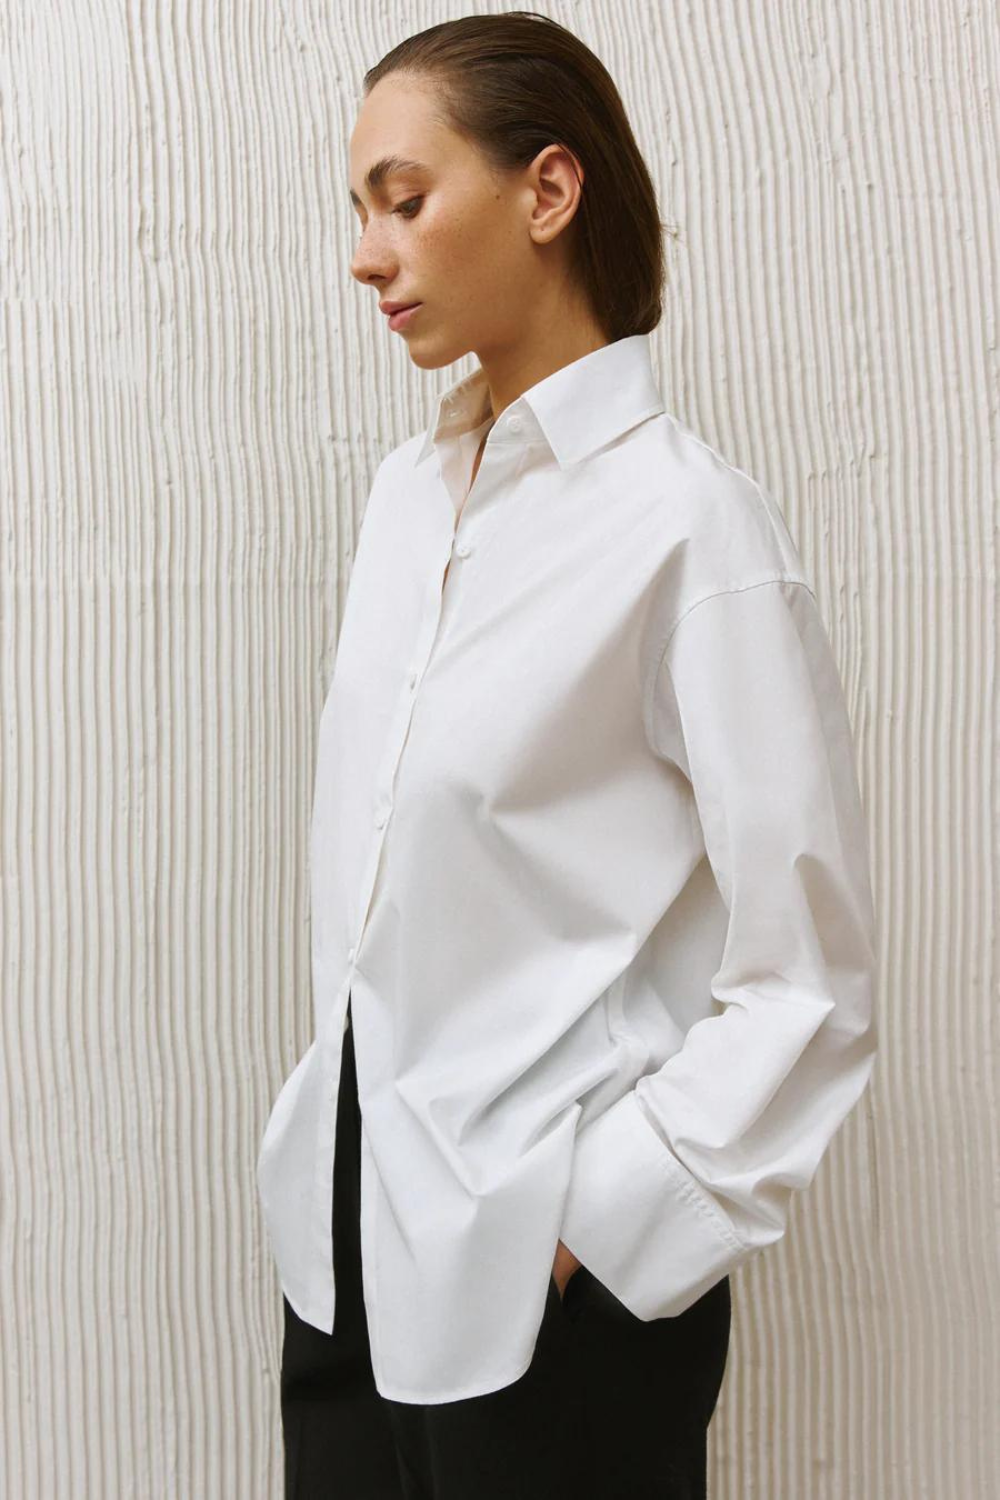 Classic white shirt, White, (IvaRych), IR_00011